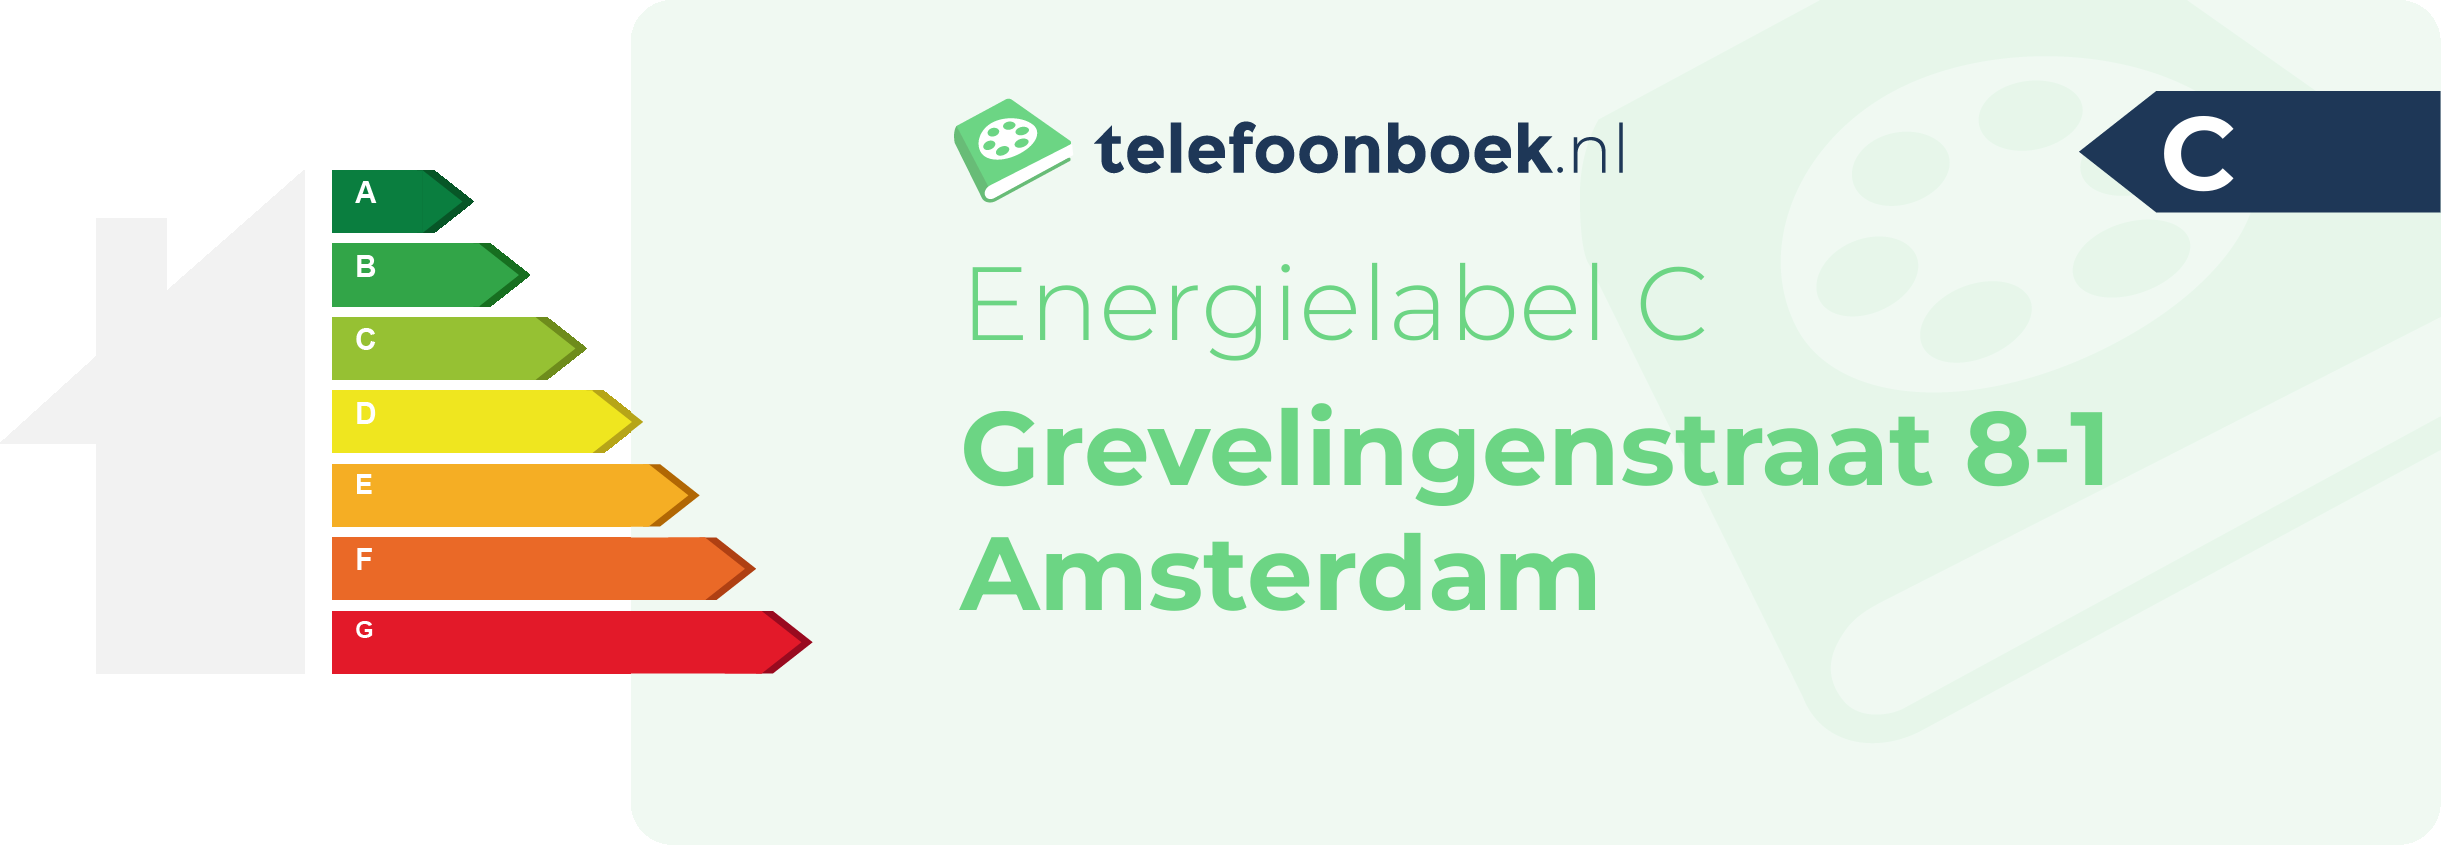 Energielabel Grevelingenstraat 8-1 Amsterdam